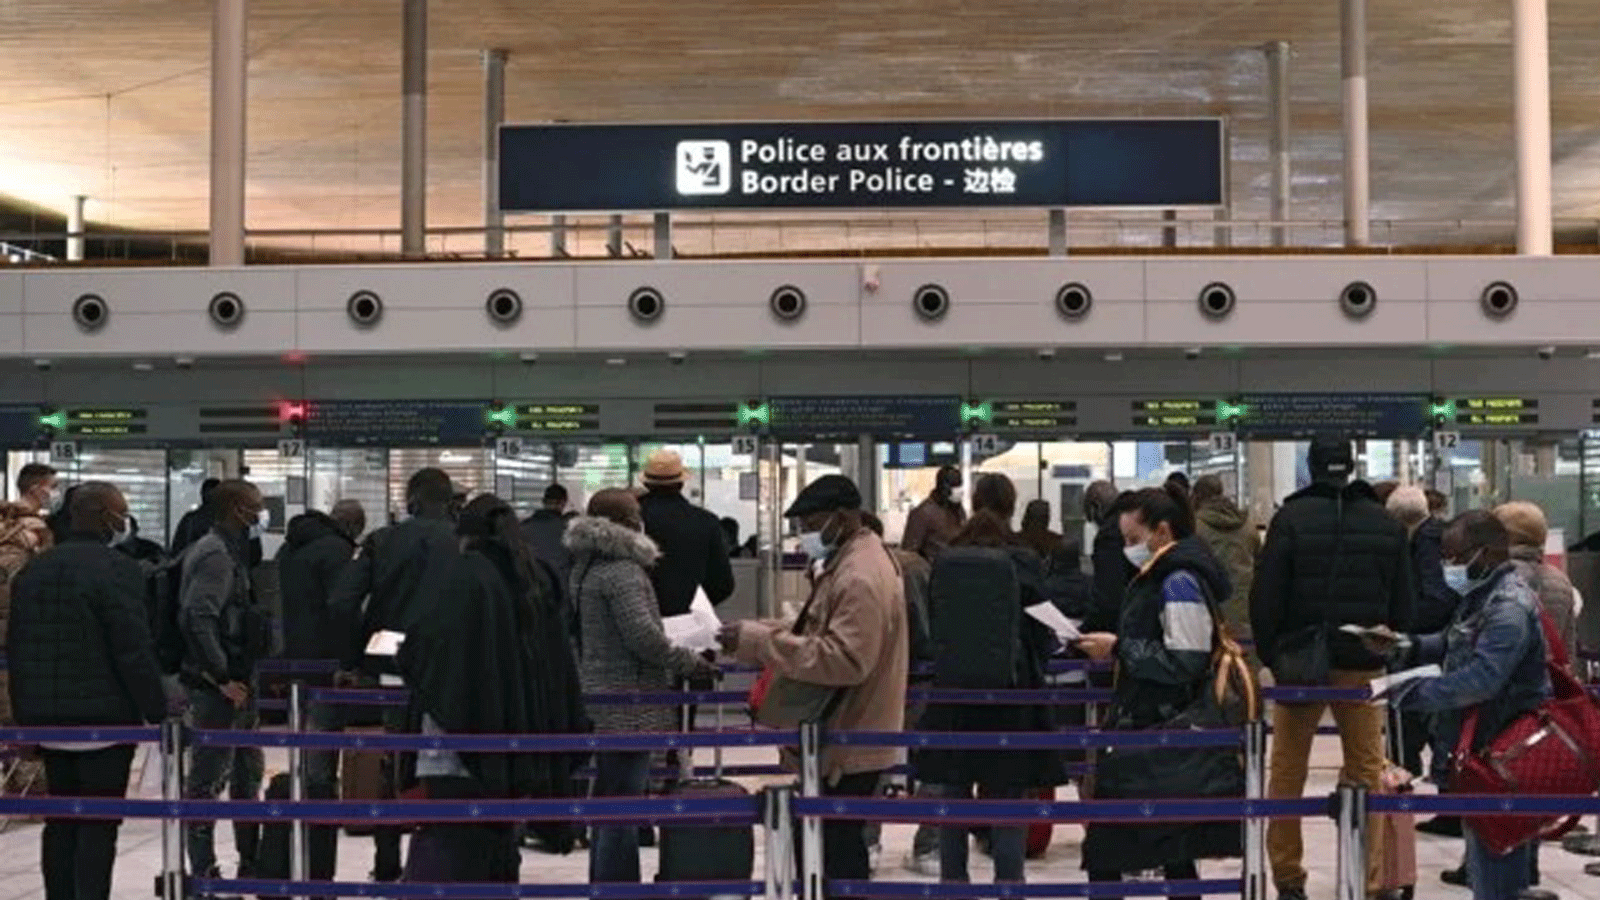 مسافرون يعدون وثائقهم أثناء وقوفهم بطابور في مكتب الهجرة بمطار رواسي شارل ديغول الدولي، مع دخول القيود الجديدة بمواجهة COVID-19 حيّز التنفيذ. 1 شباط/فبراير 2021.